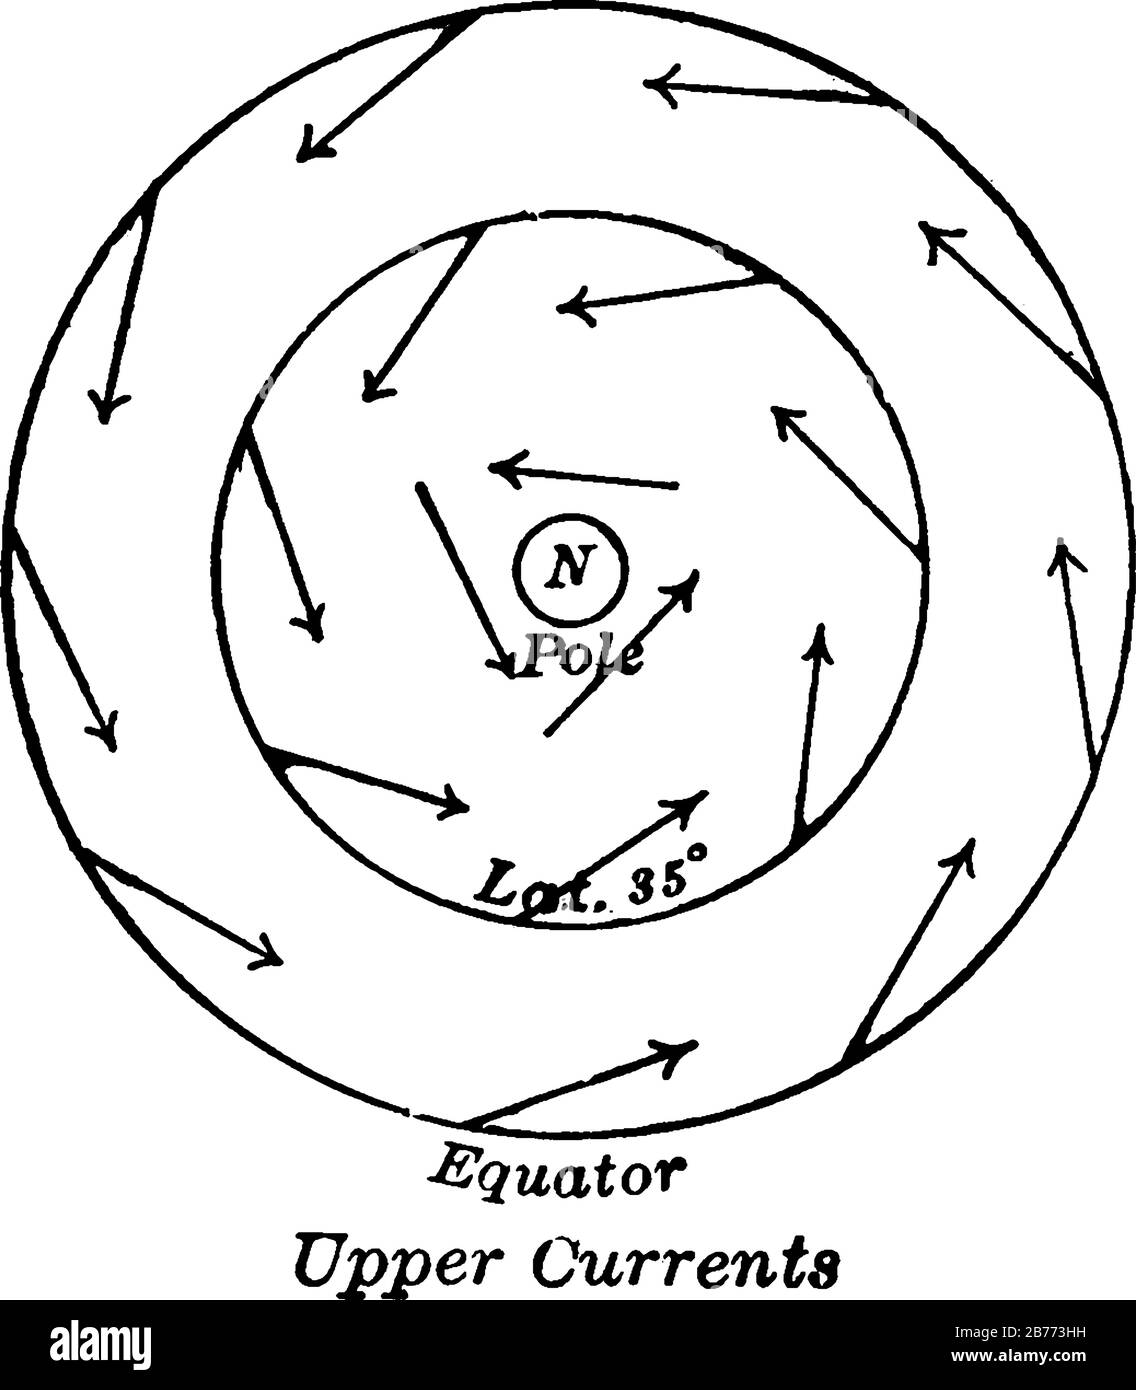 Una rappresentazione tipica della direzione emisferica generale delle correnti d'aria orizzontali (superiori), del disegno a linea d'annata o dell'illustrazione dell'incisione. Illustrazione Vettoriale